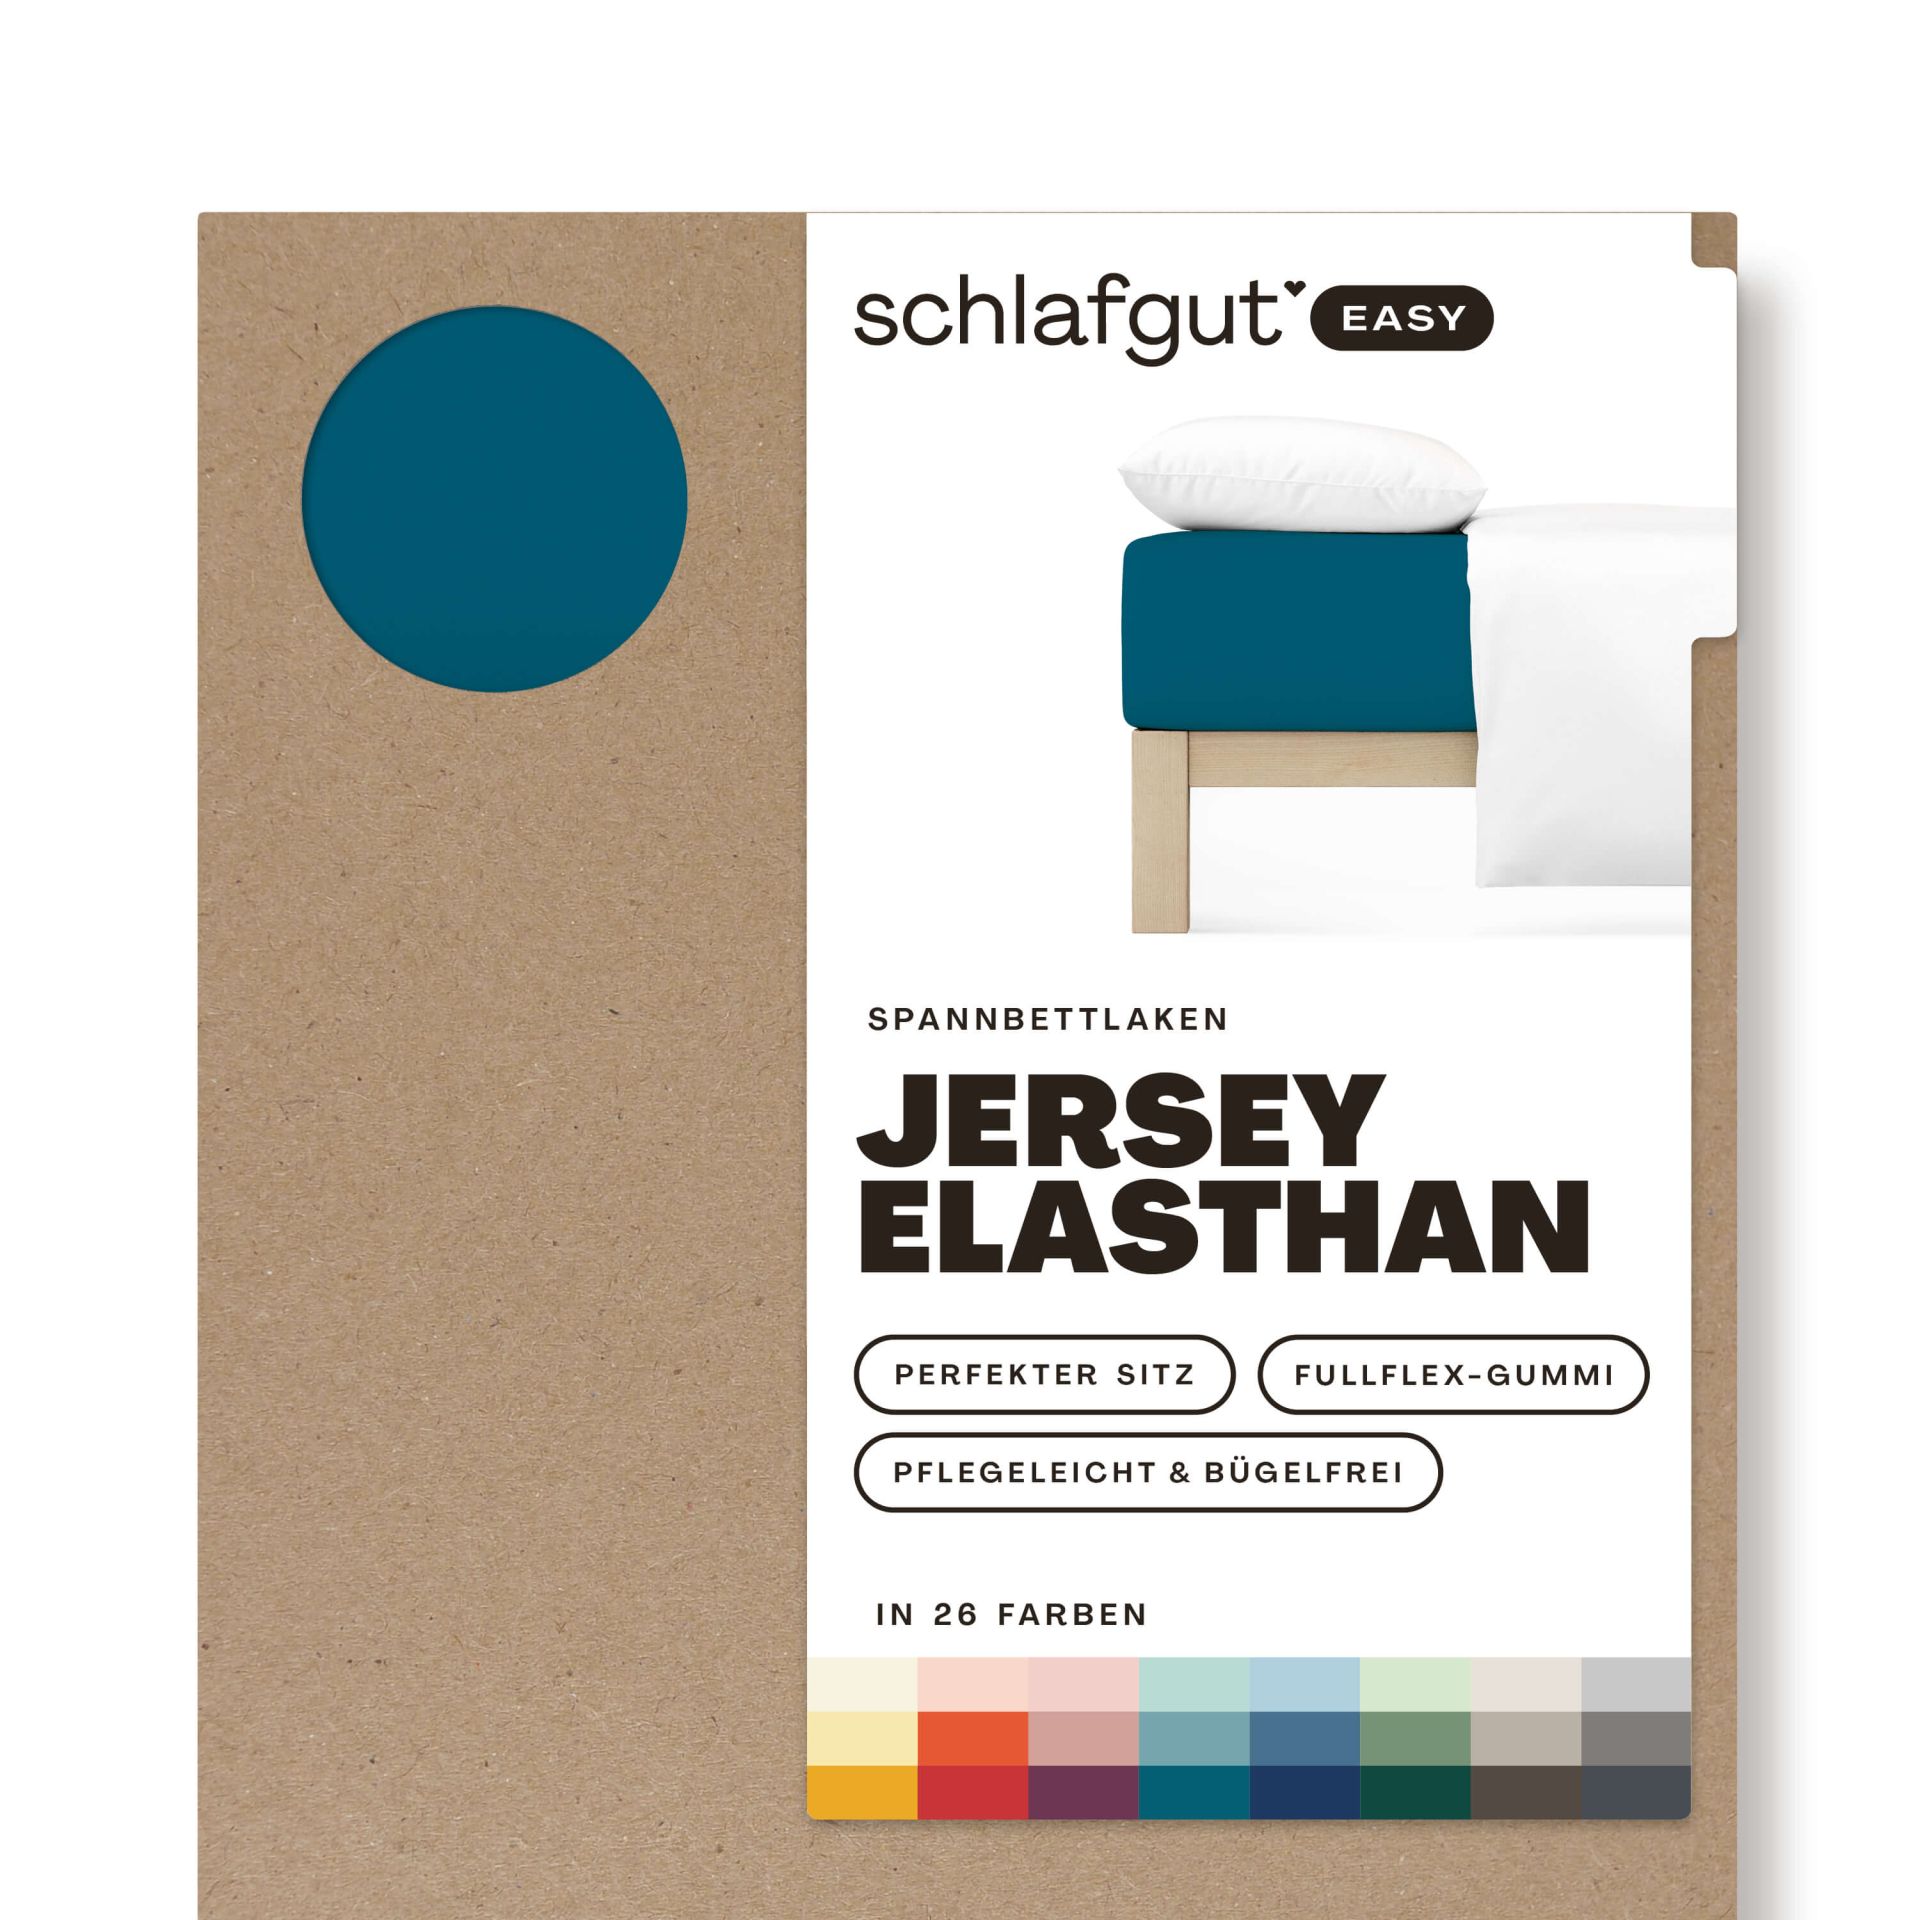 Das Produktbild vom Spannbettlaken der Reihe Easy Elasthan in Farbe petrol deep von Schlafgut